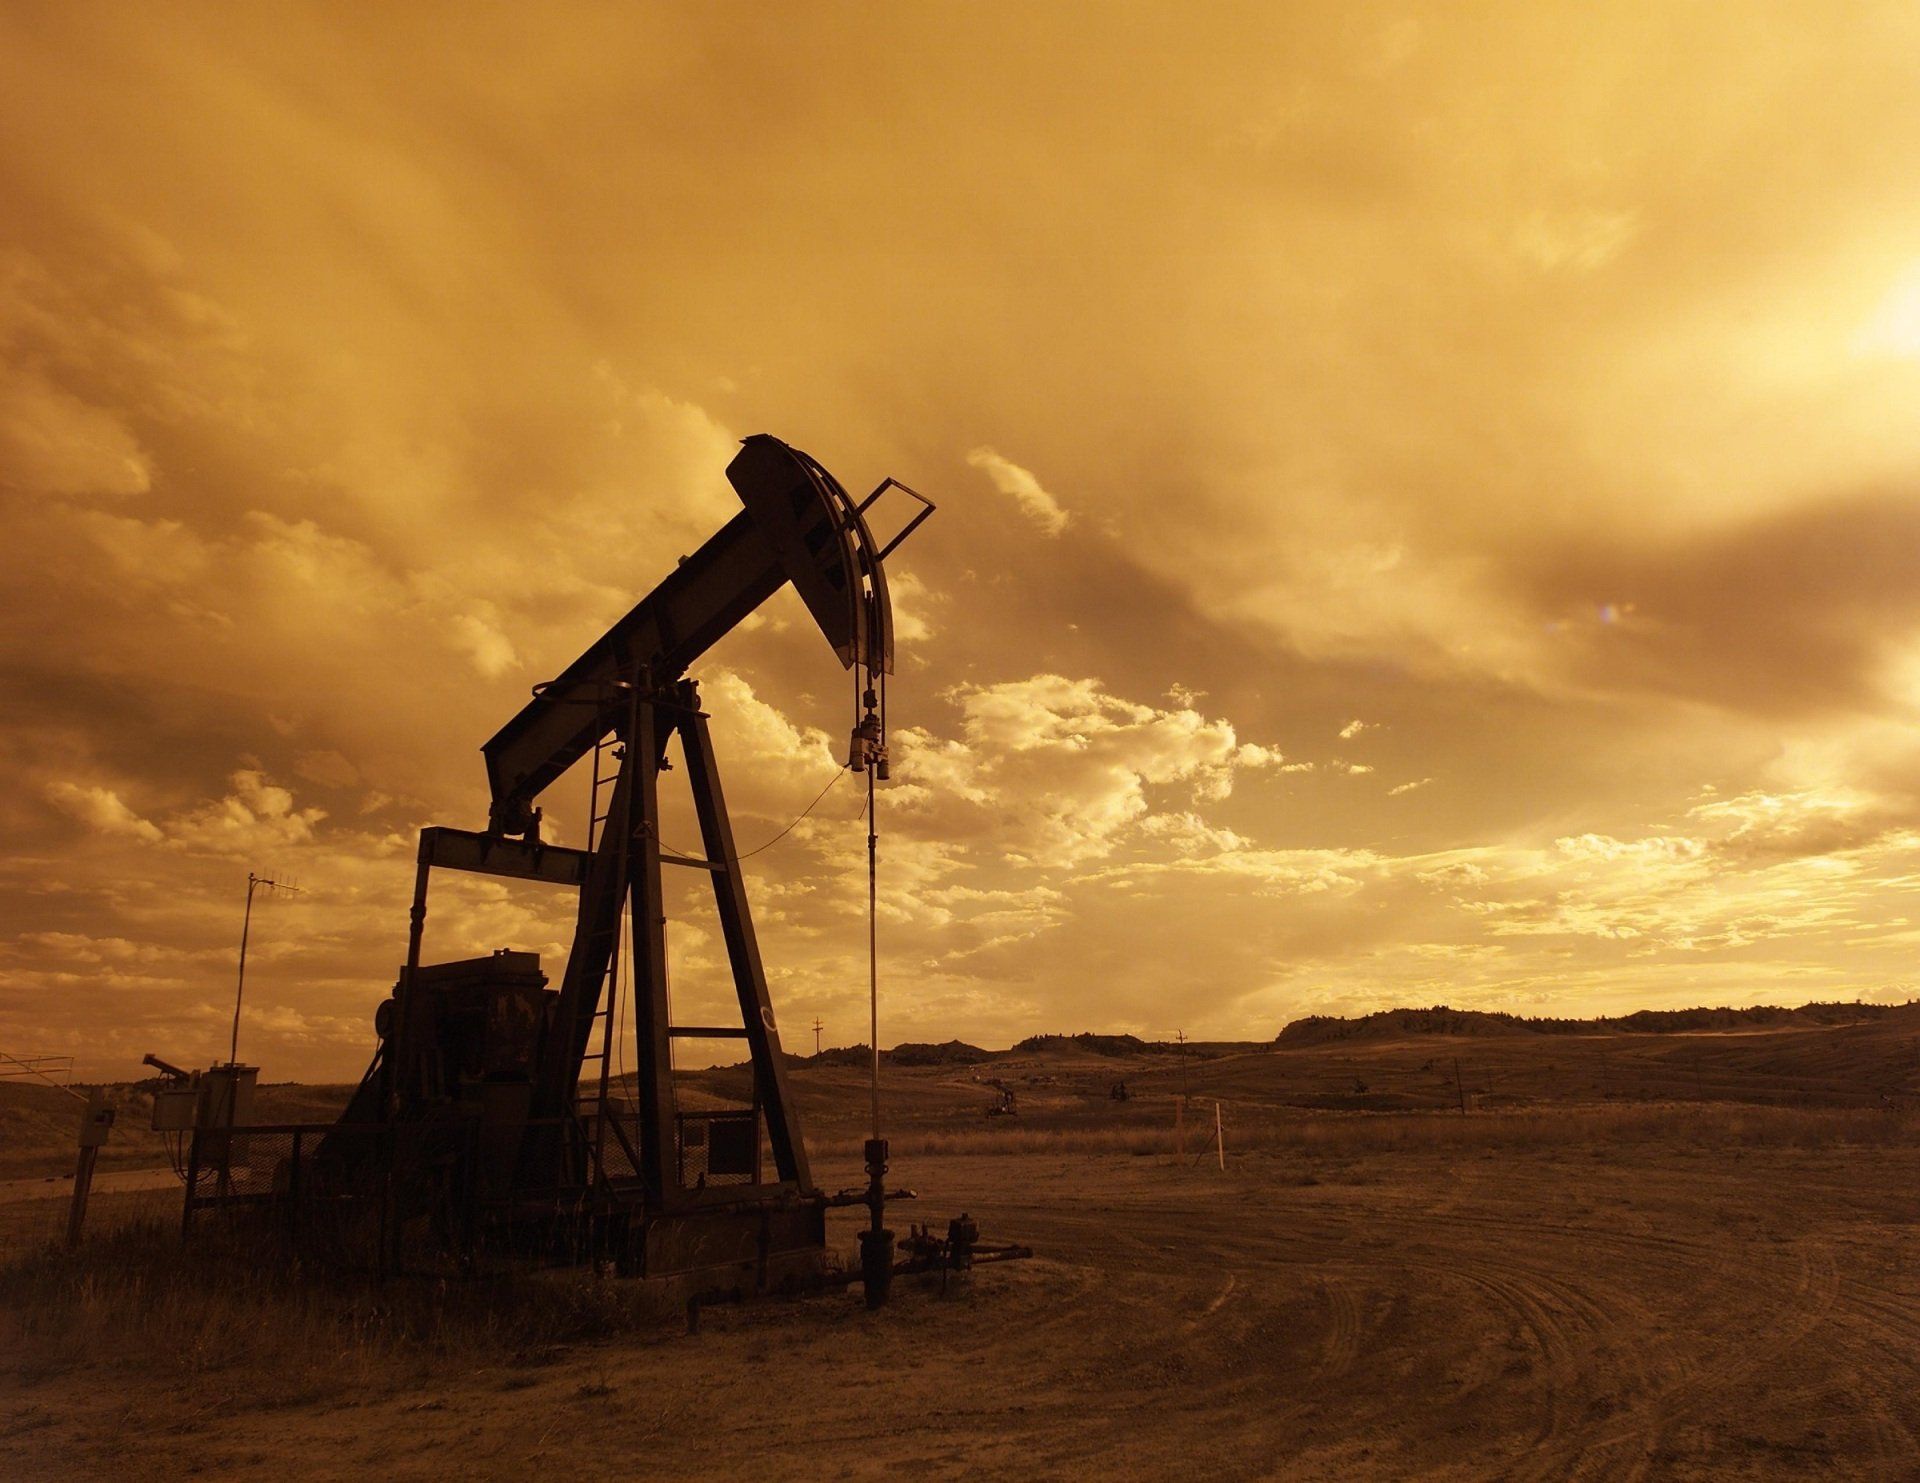 oilfield rig at dusk in Texas